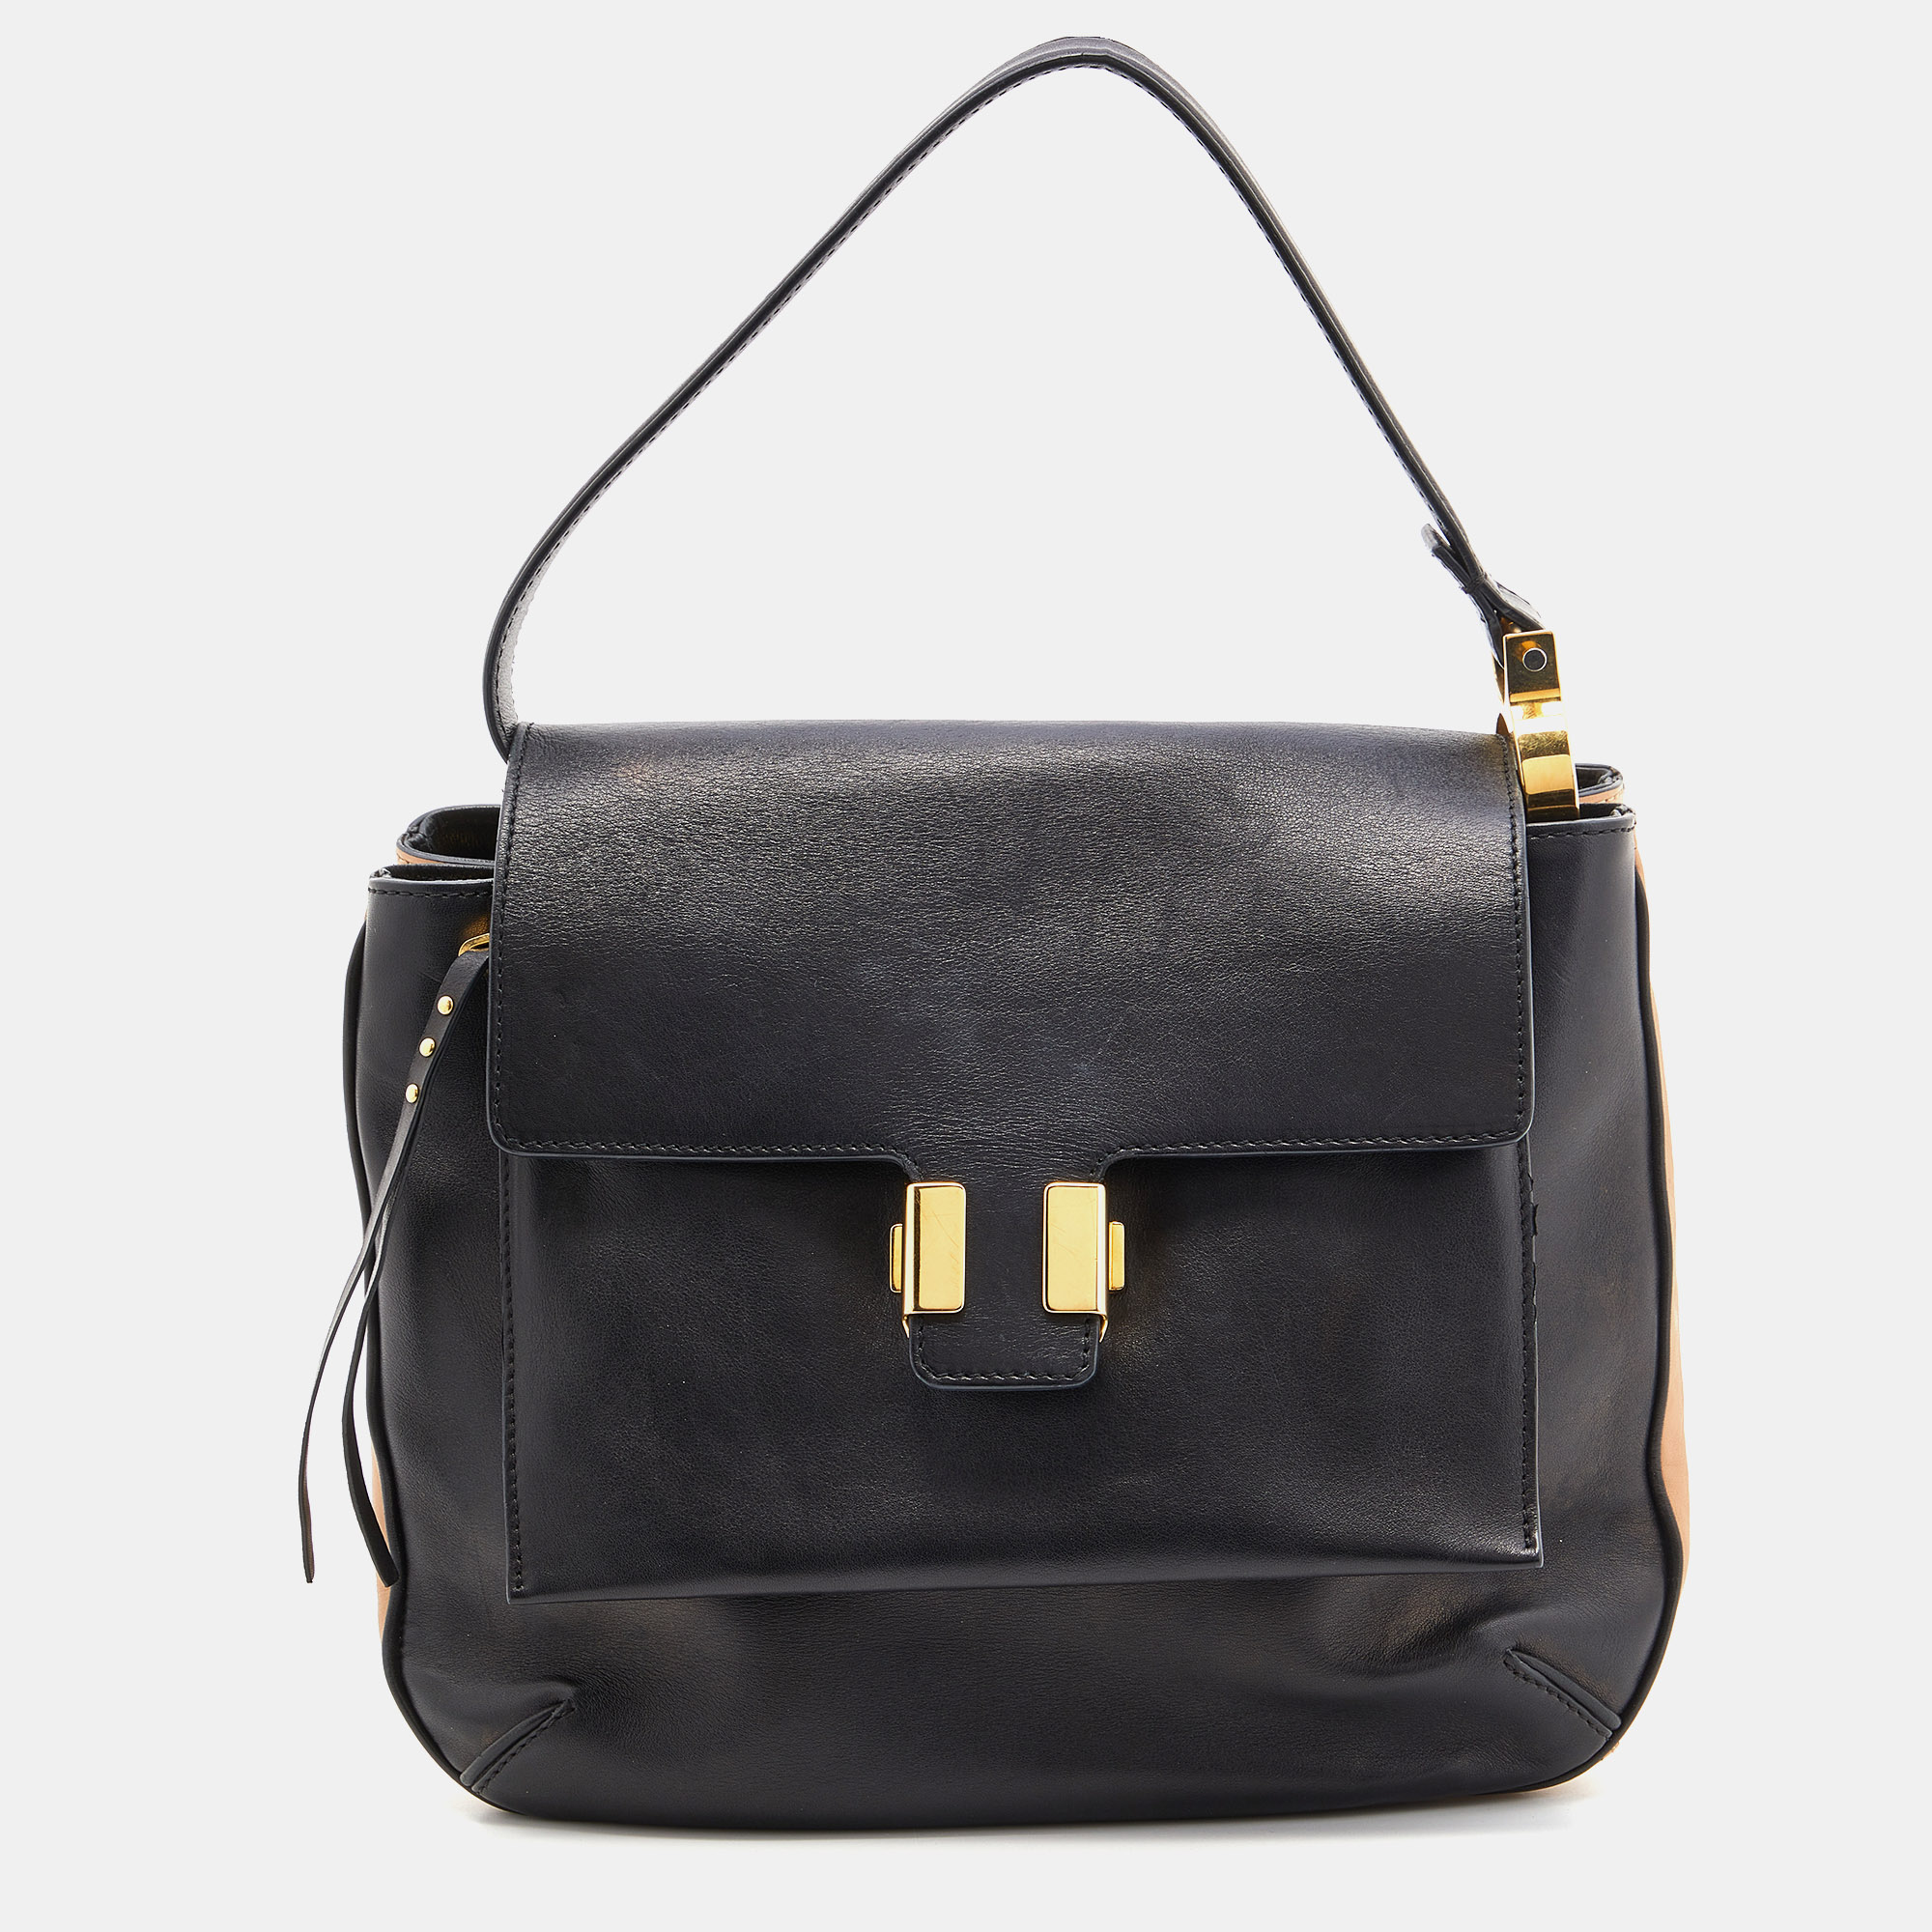 Chloe Black Leather Flap Top Handle Bag